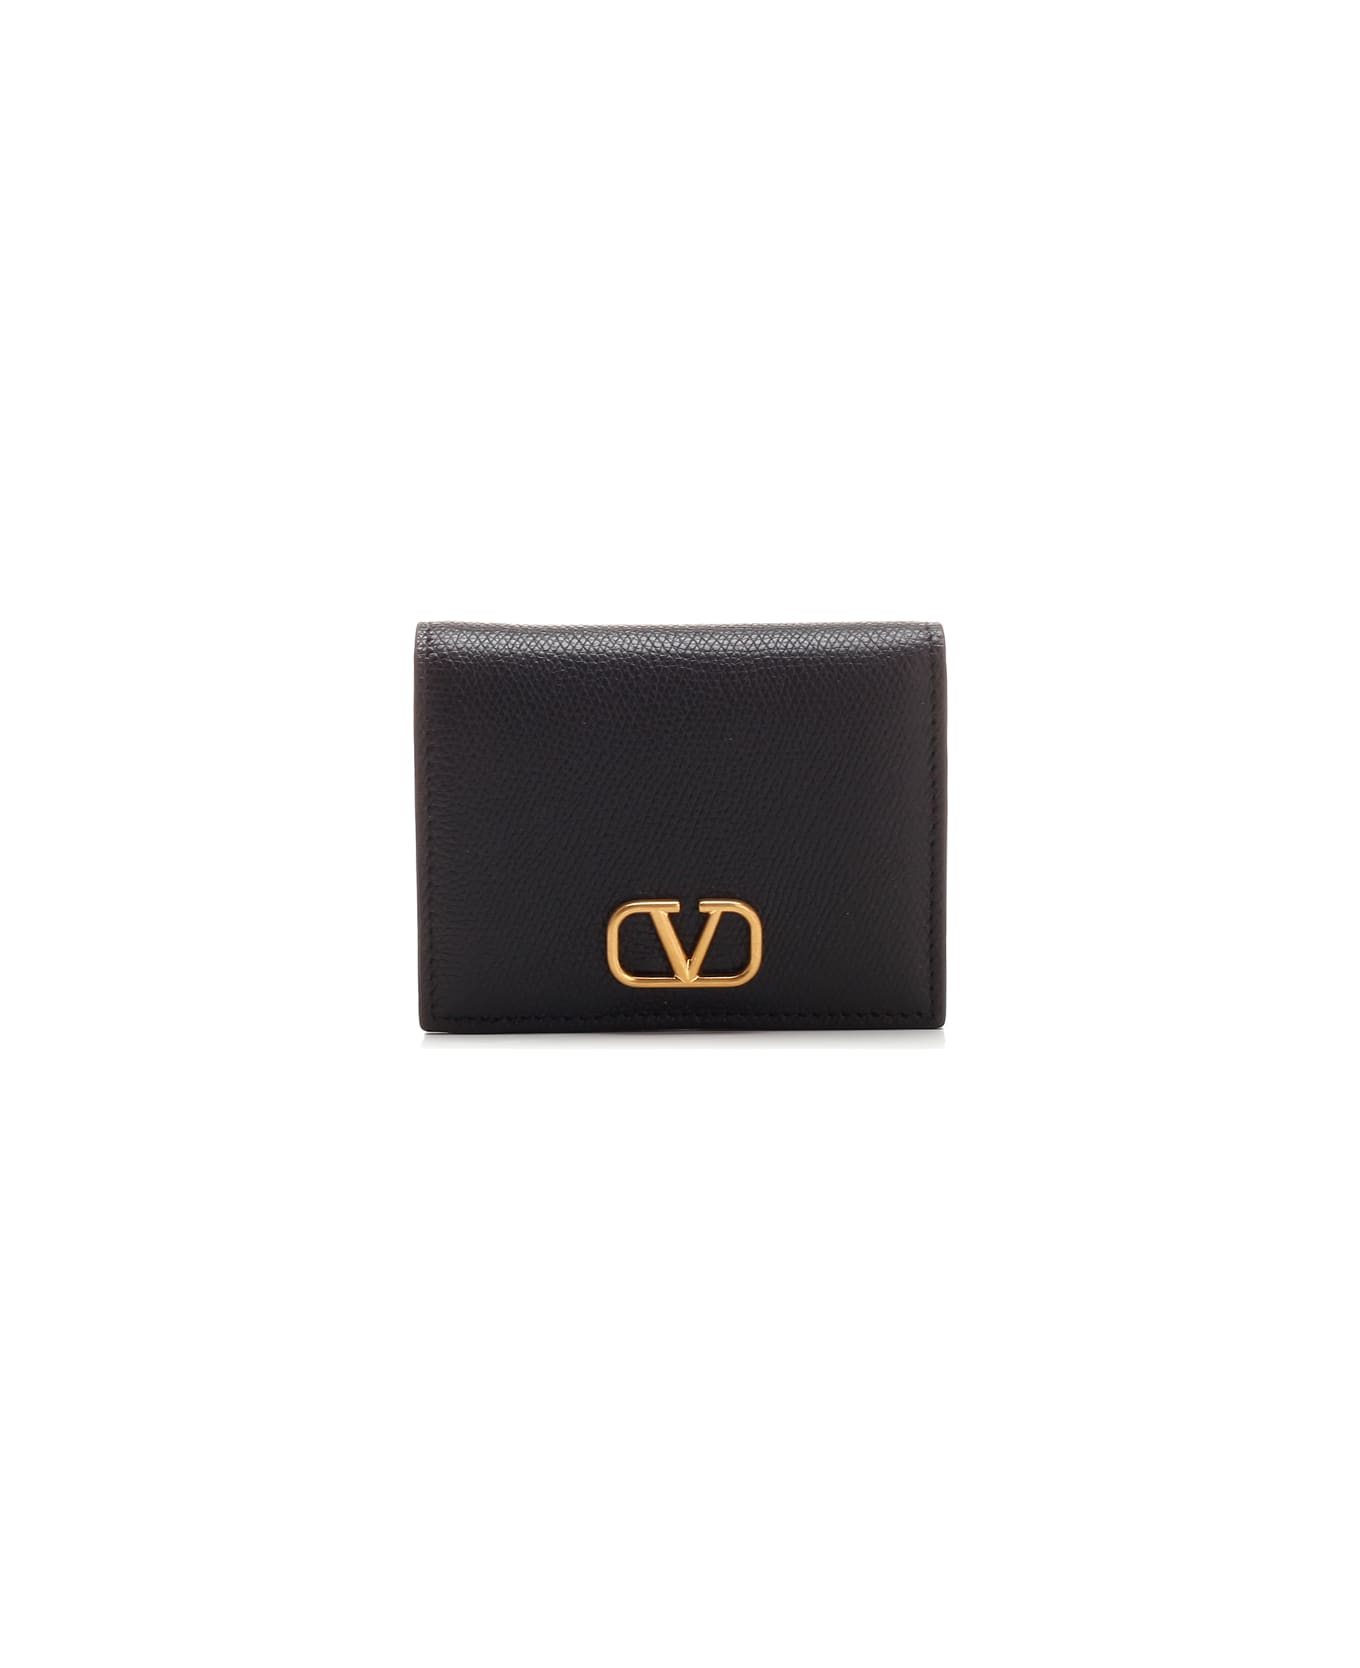 Valentino Garavani Compact Wallet - Black